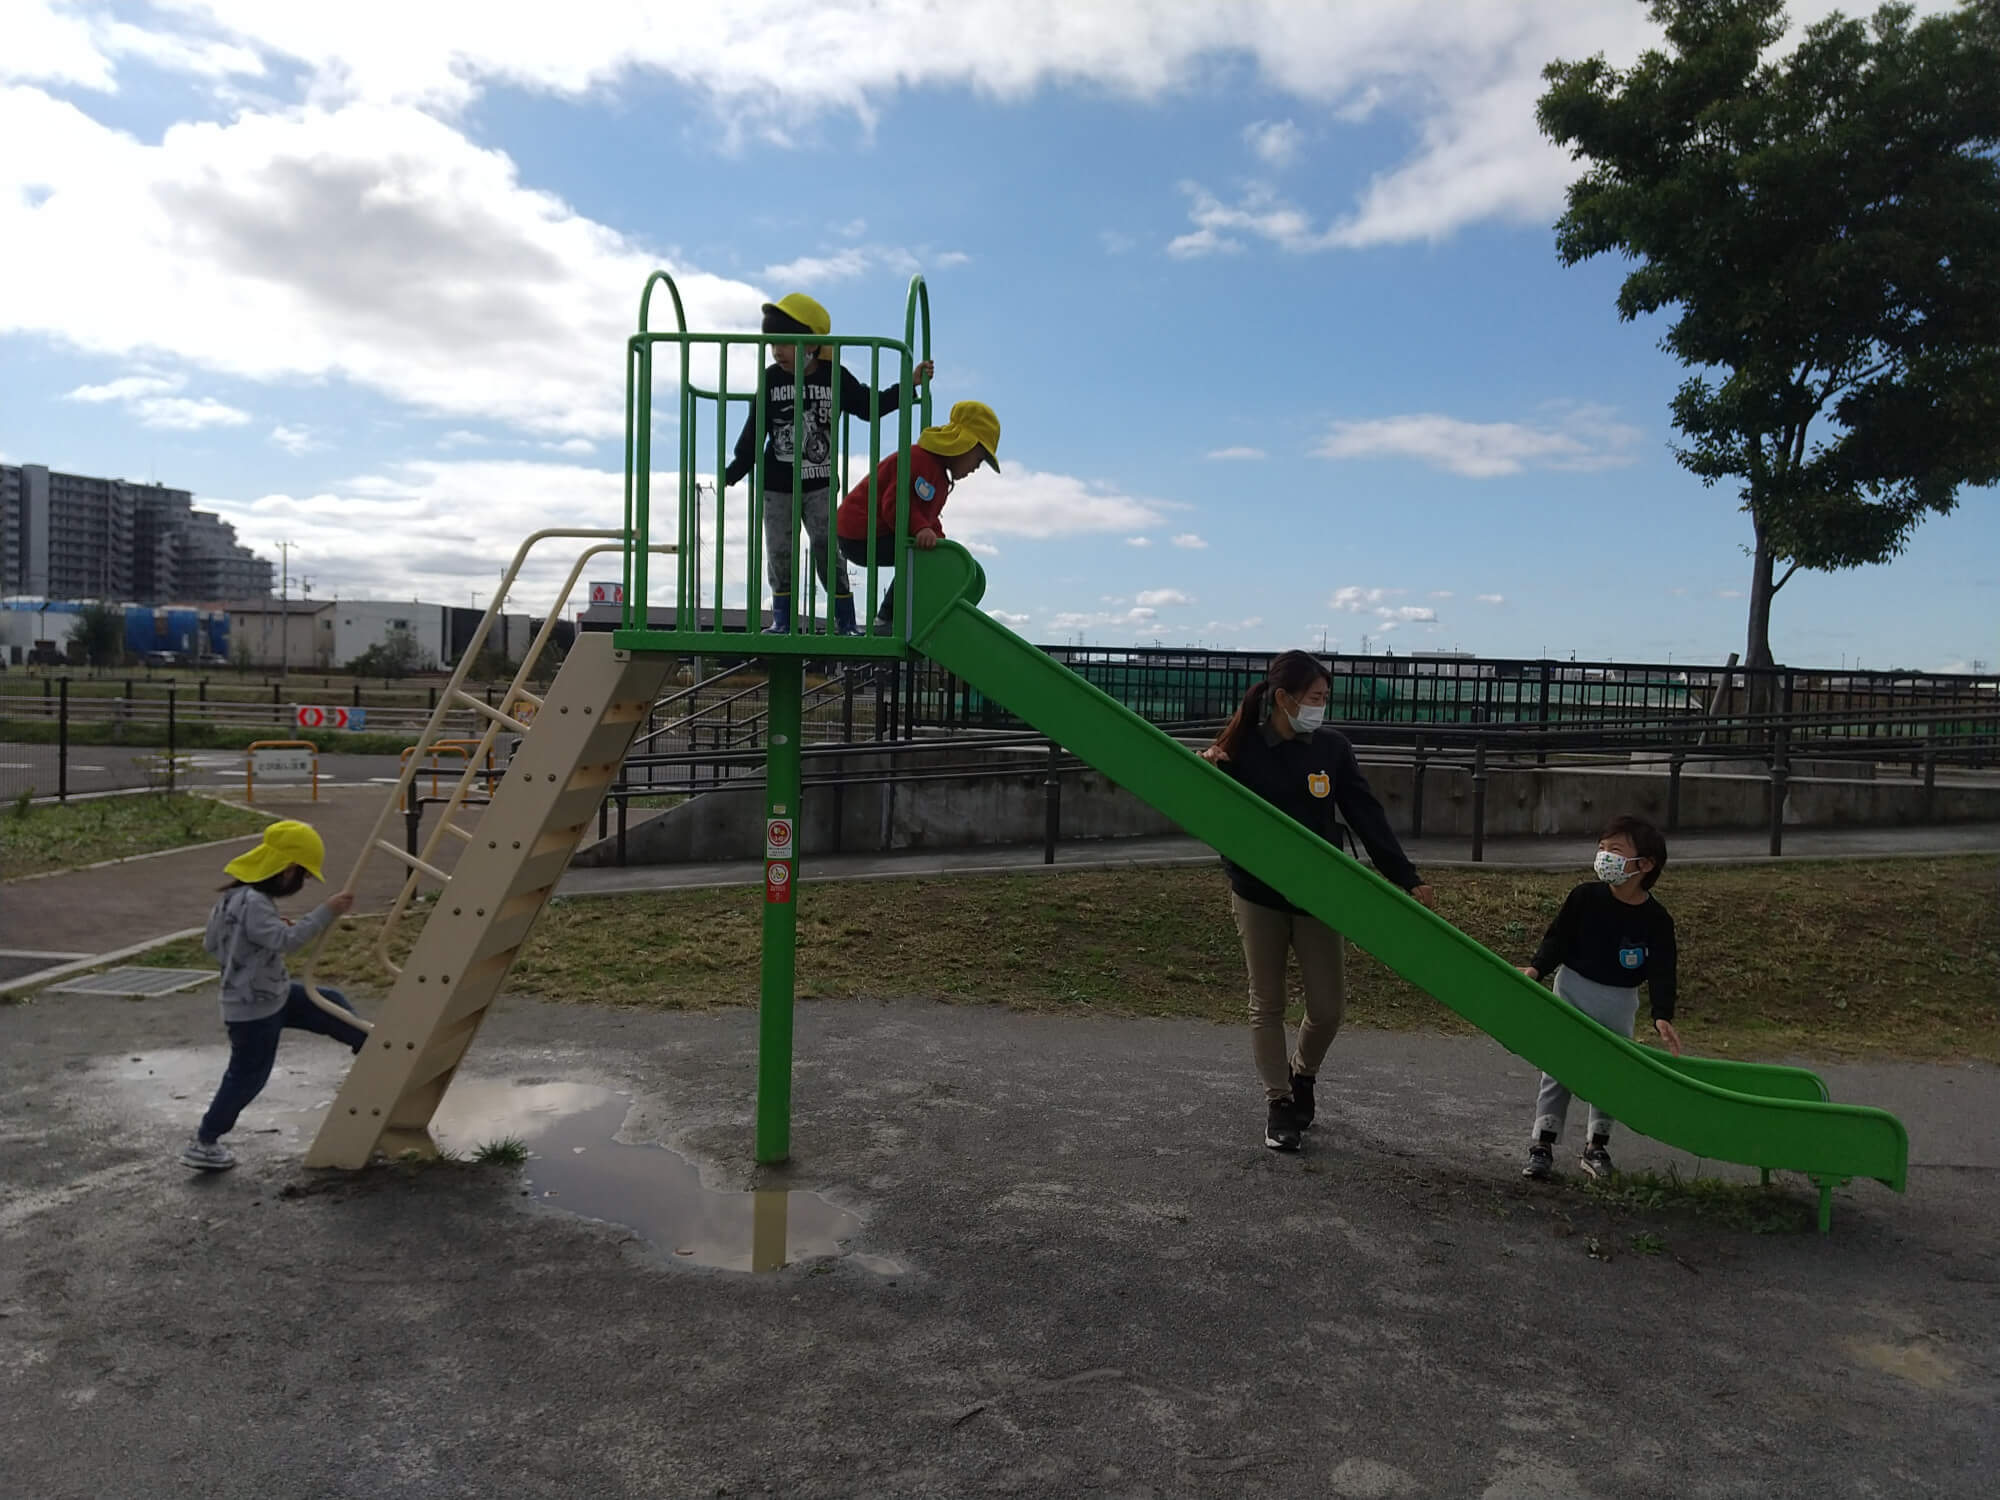 公園で遊ぶ子どもたち